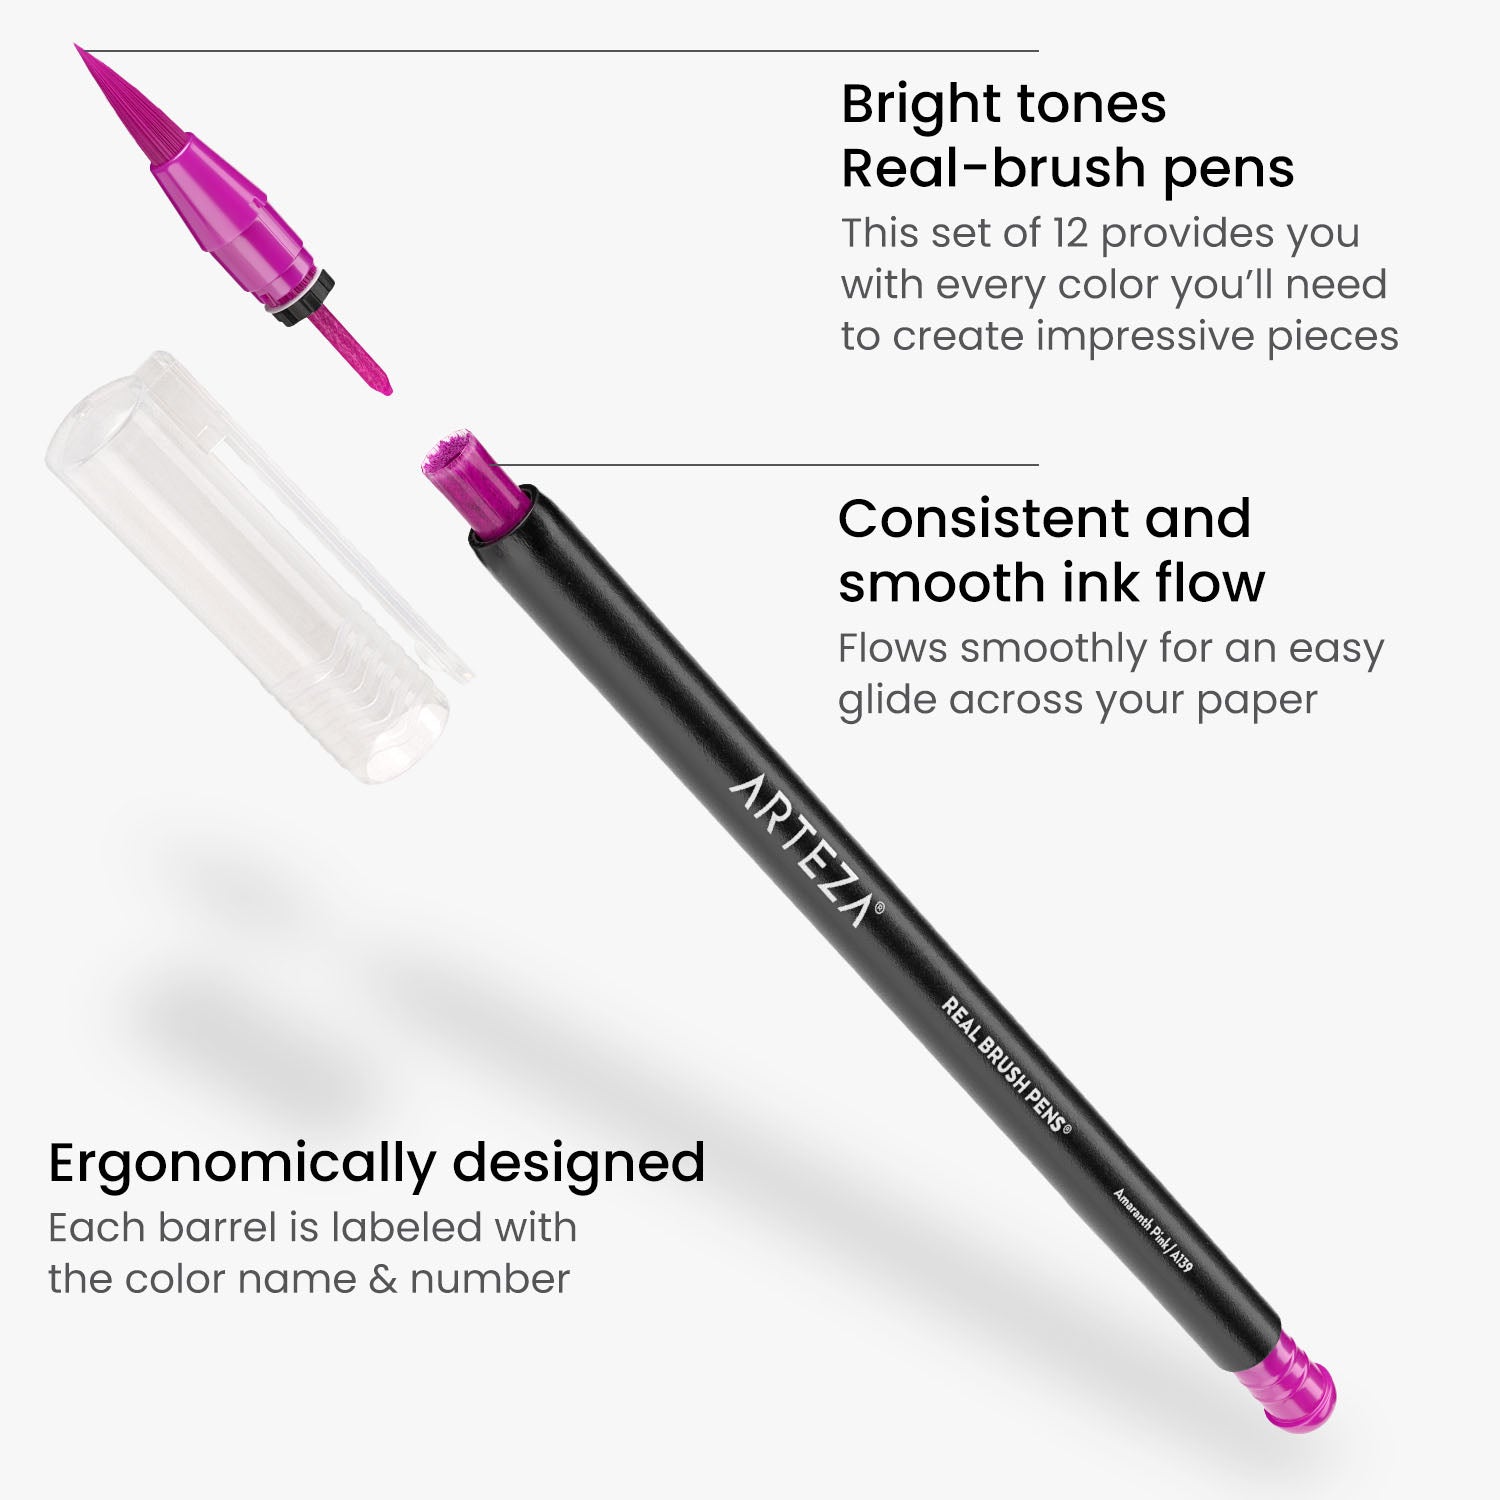 https://arteza.com/cdn/shop/products/set-of-12-real-brush-pens-bright-tones_YlzULl0q.jpg?v=1681831866&width=1946